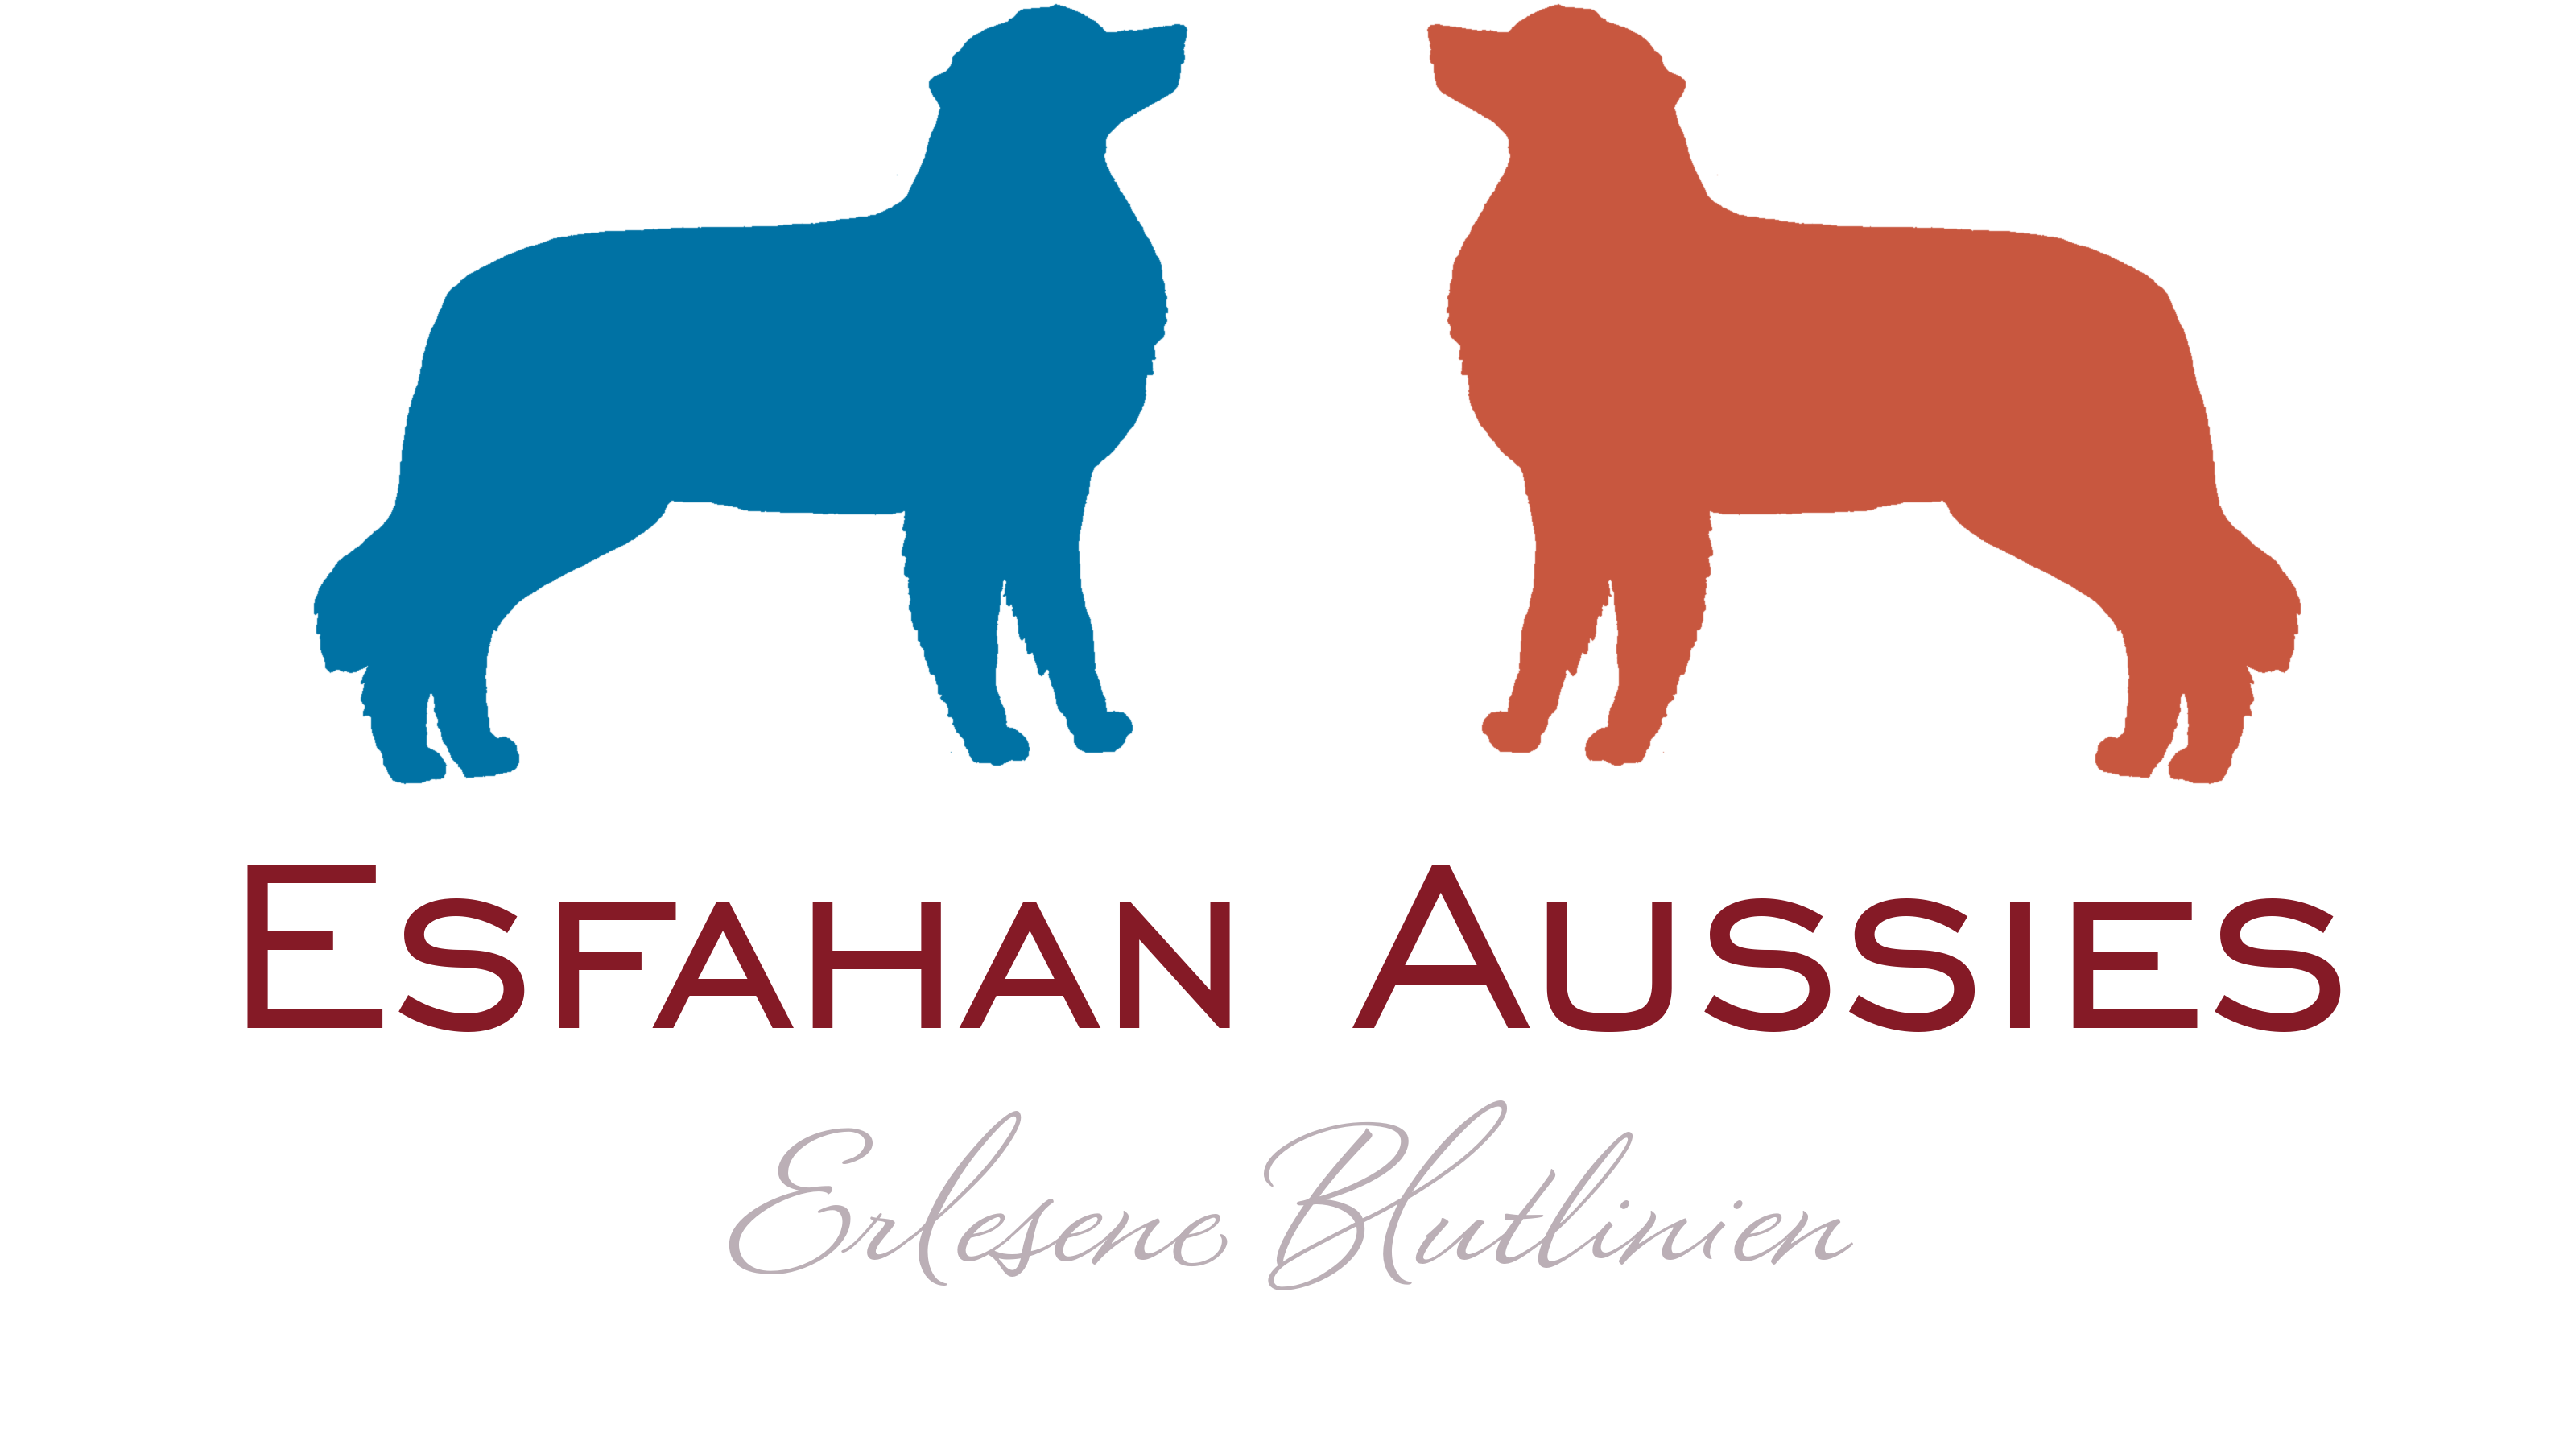 Esfahan Aussies